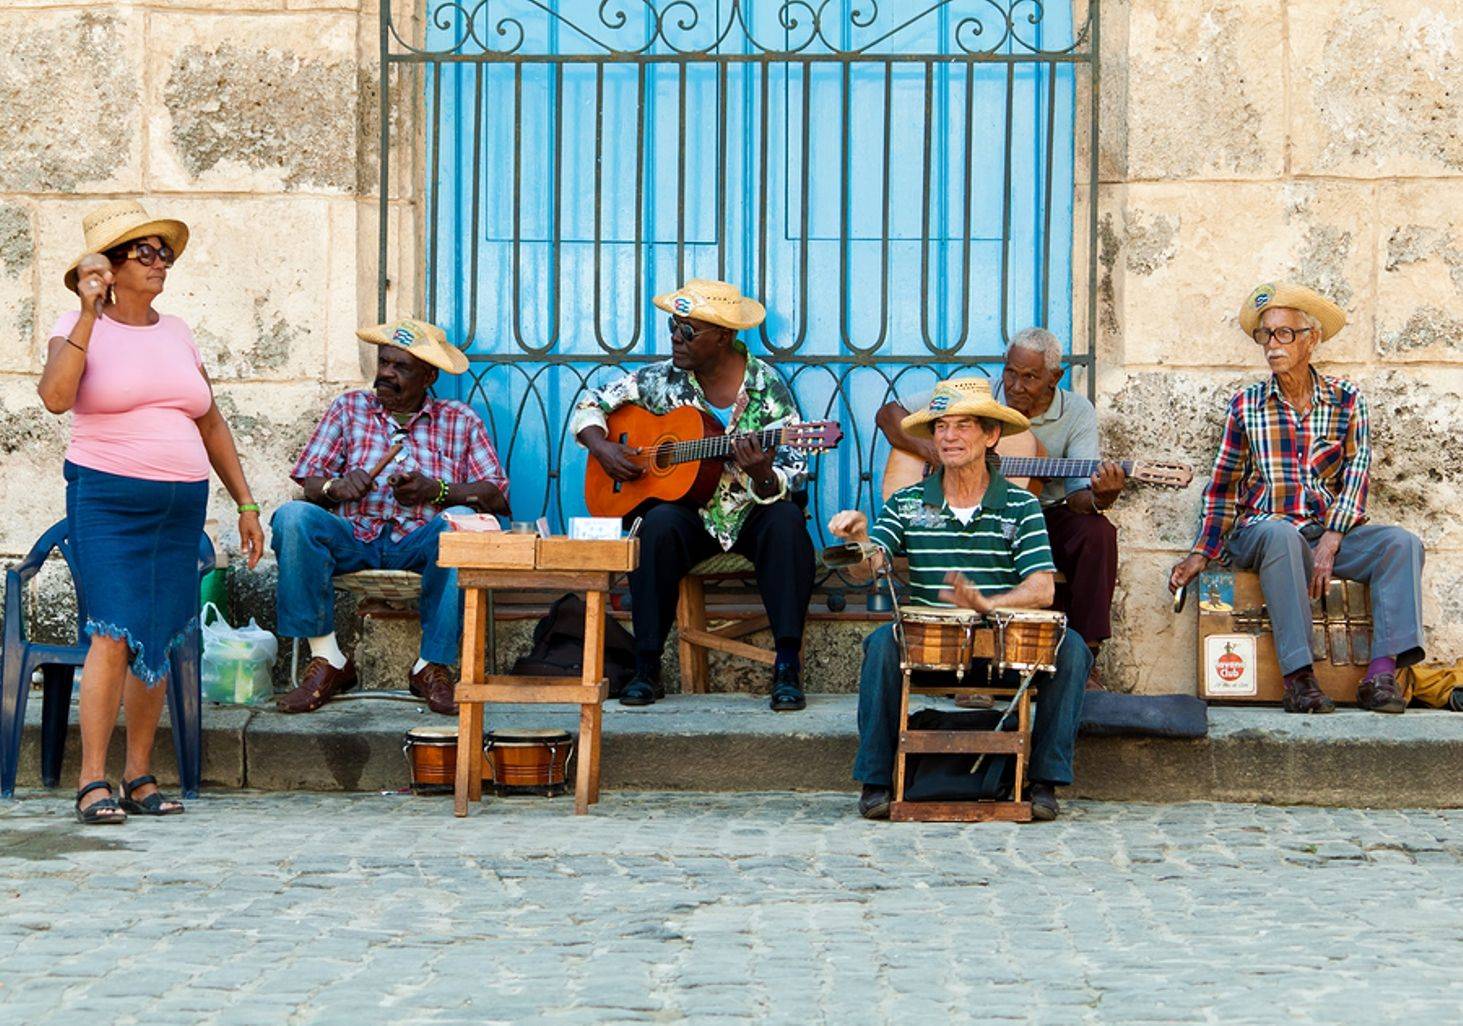 Fotoreise durch Havanas Altstadt